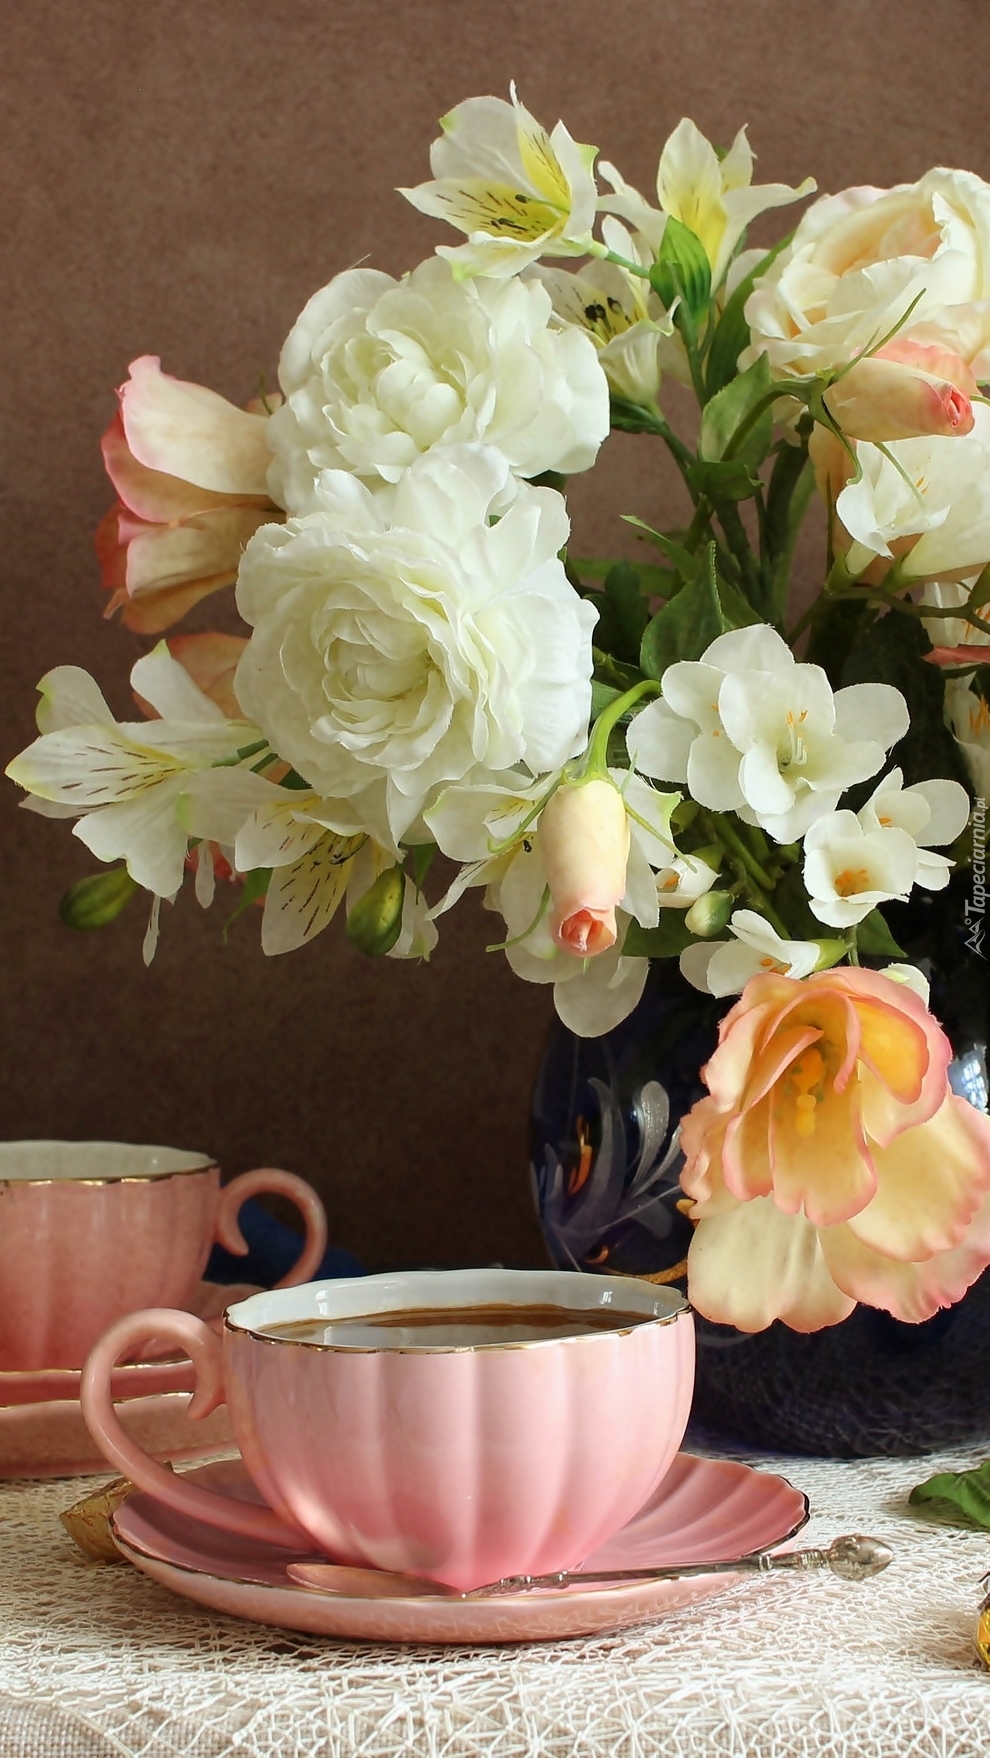 Filiżanki obok wazonu z kwiatami